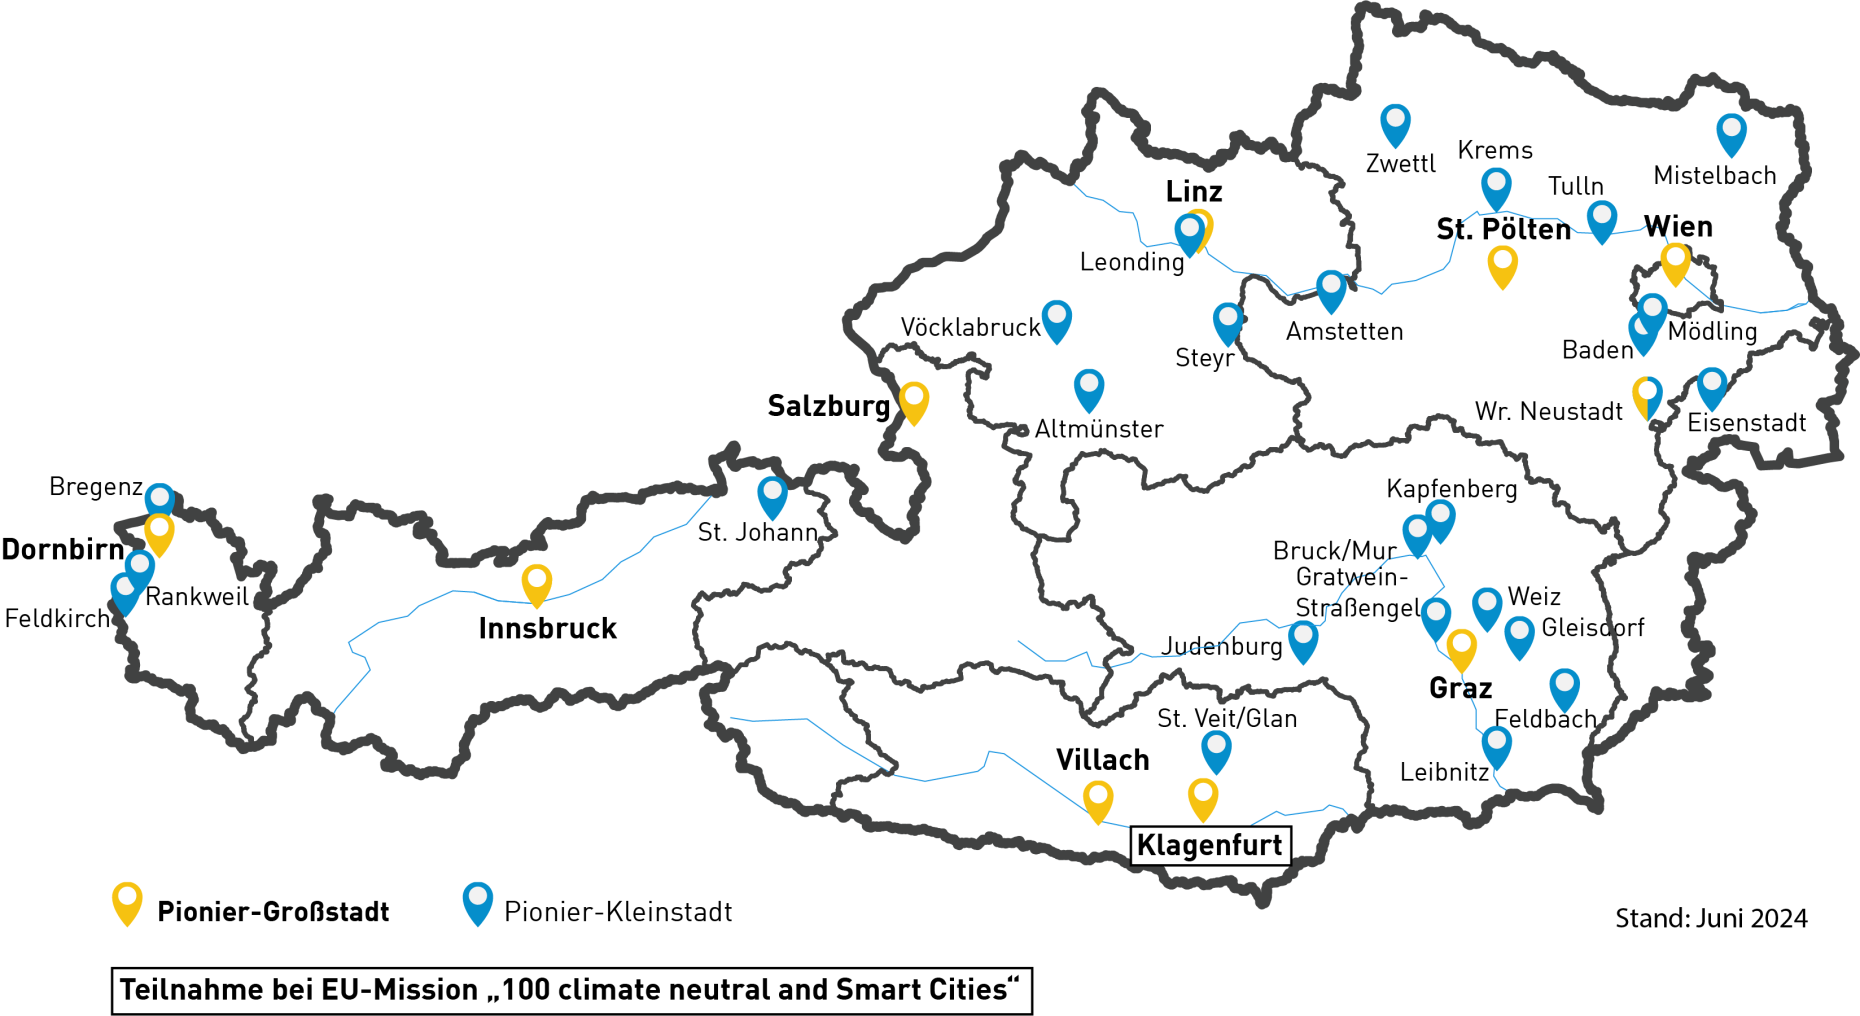 Österreichkarte mit den Pionier-Groß- und -Kleinstädten